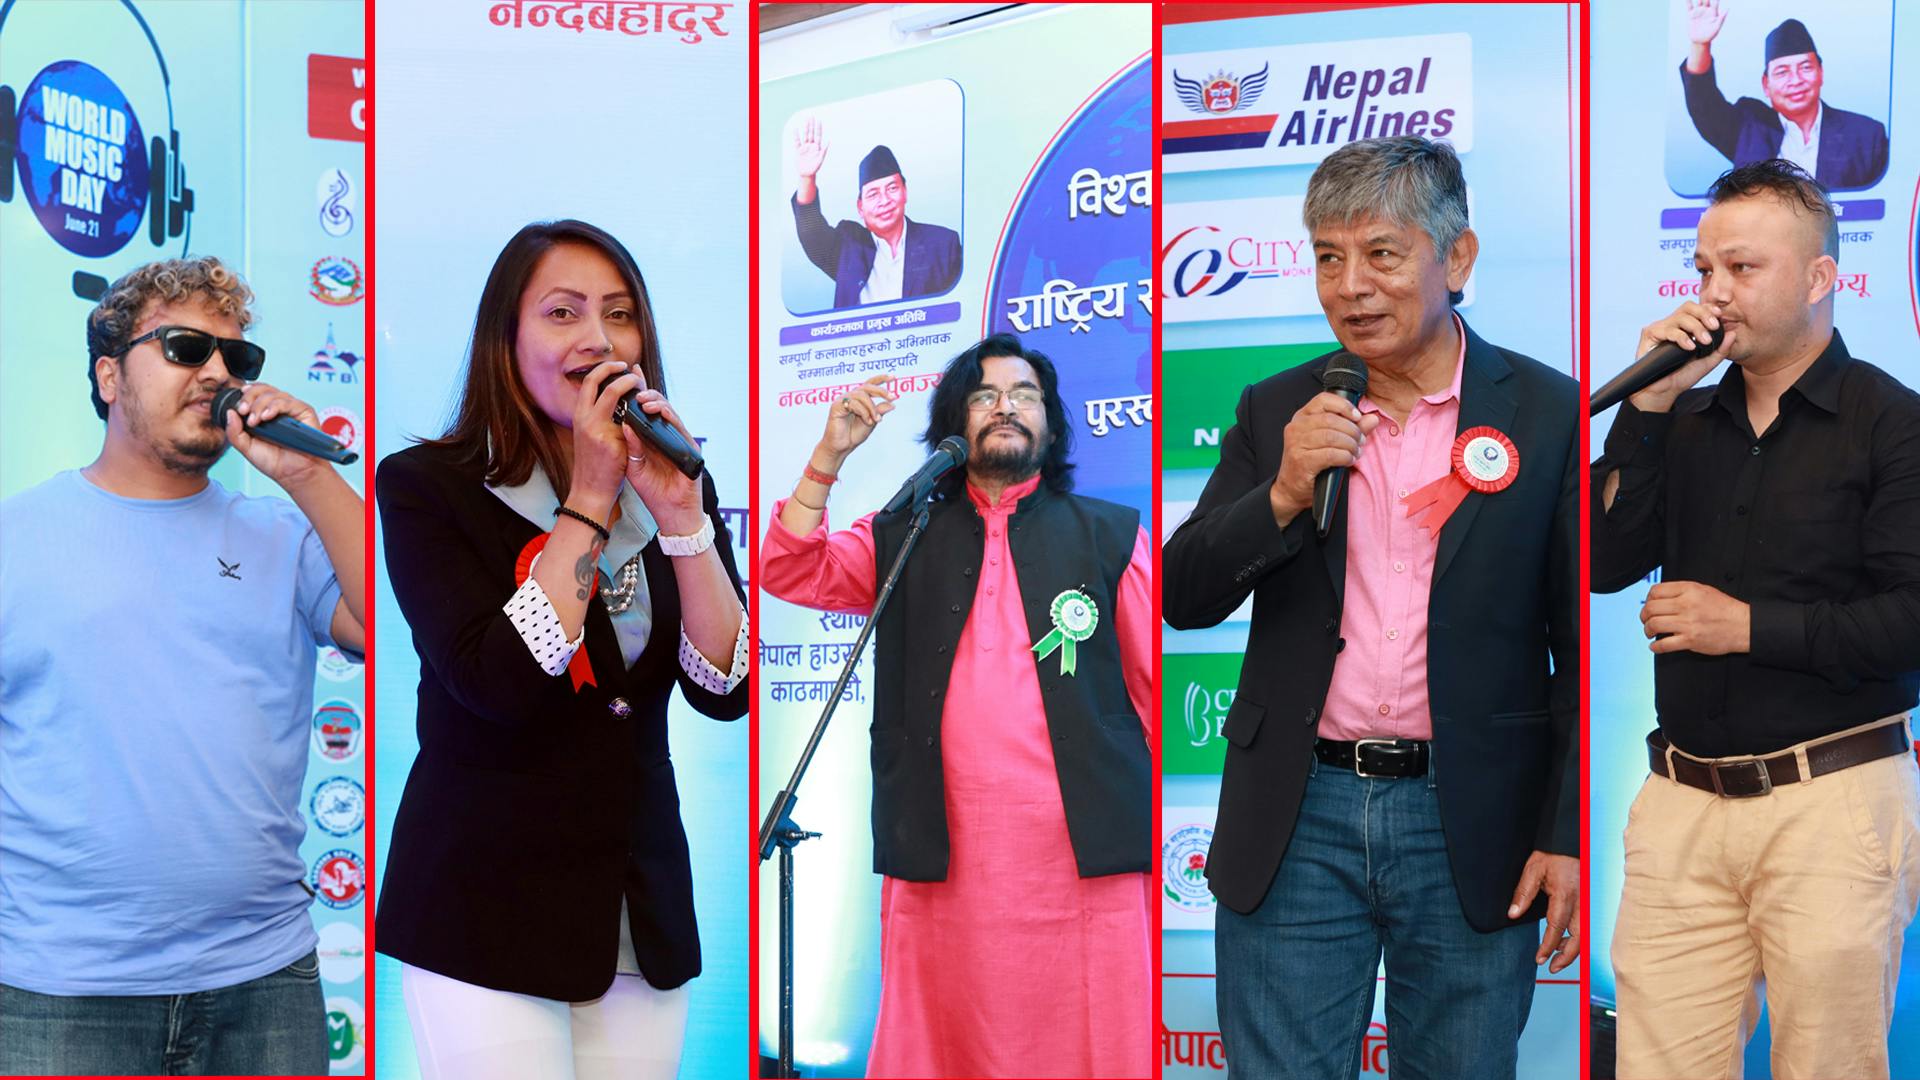 World Music Day Music Association of Nepal